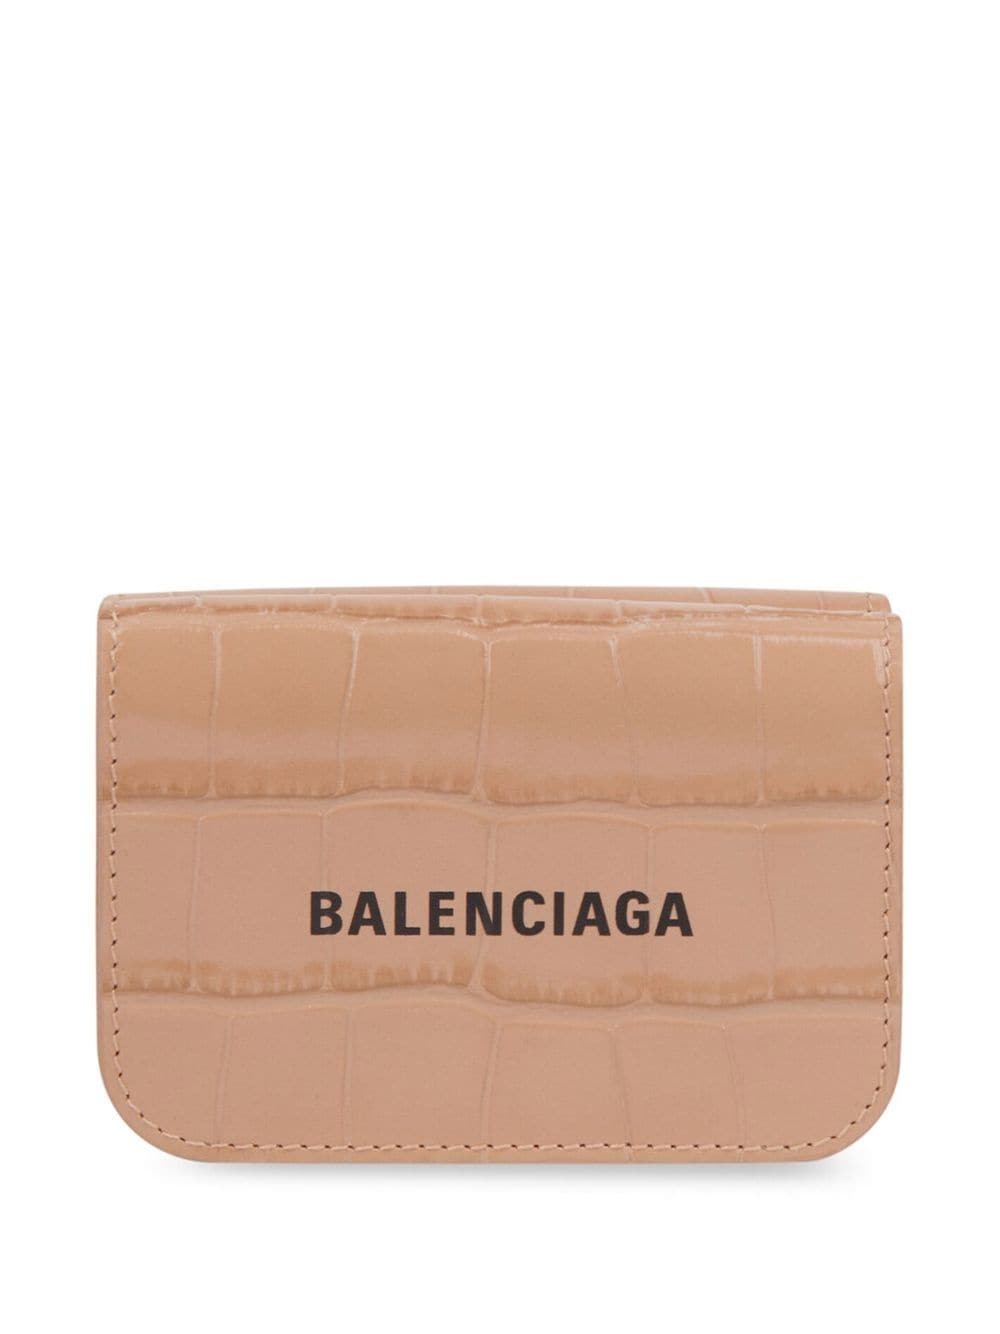 Balenciaga cash mini wallet - Neutrals von Balenciaga